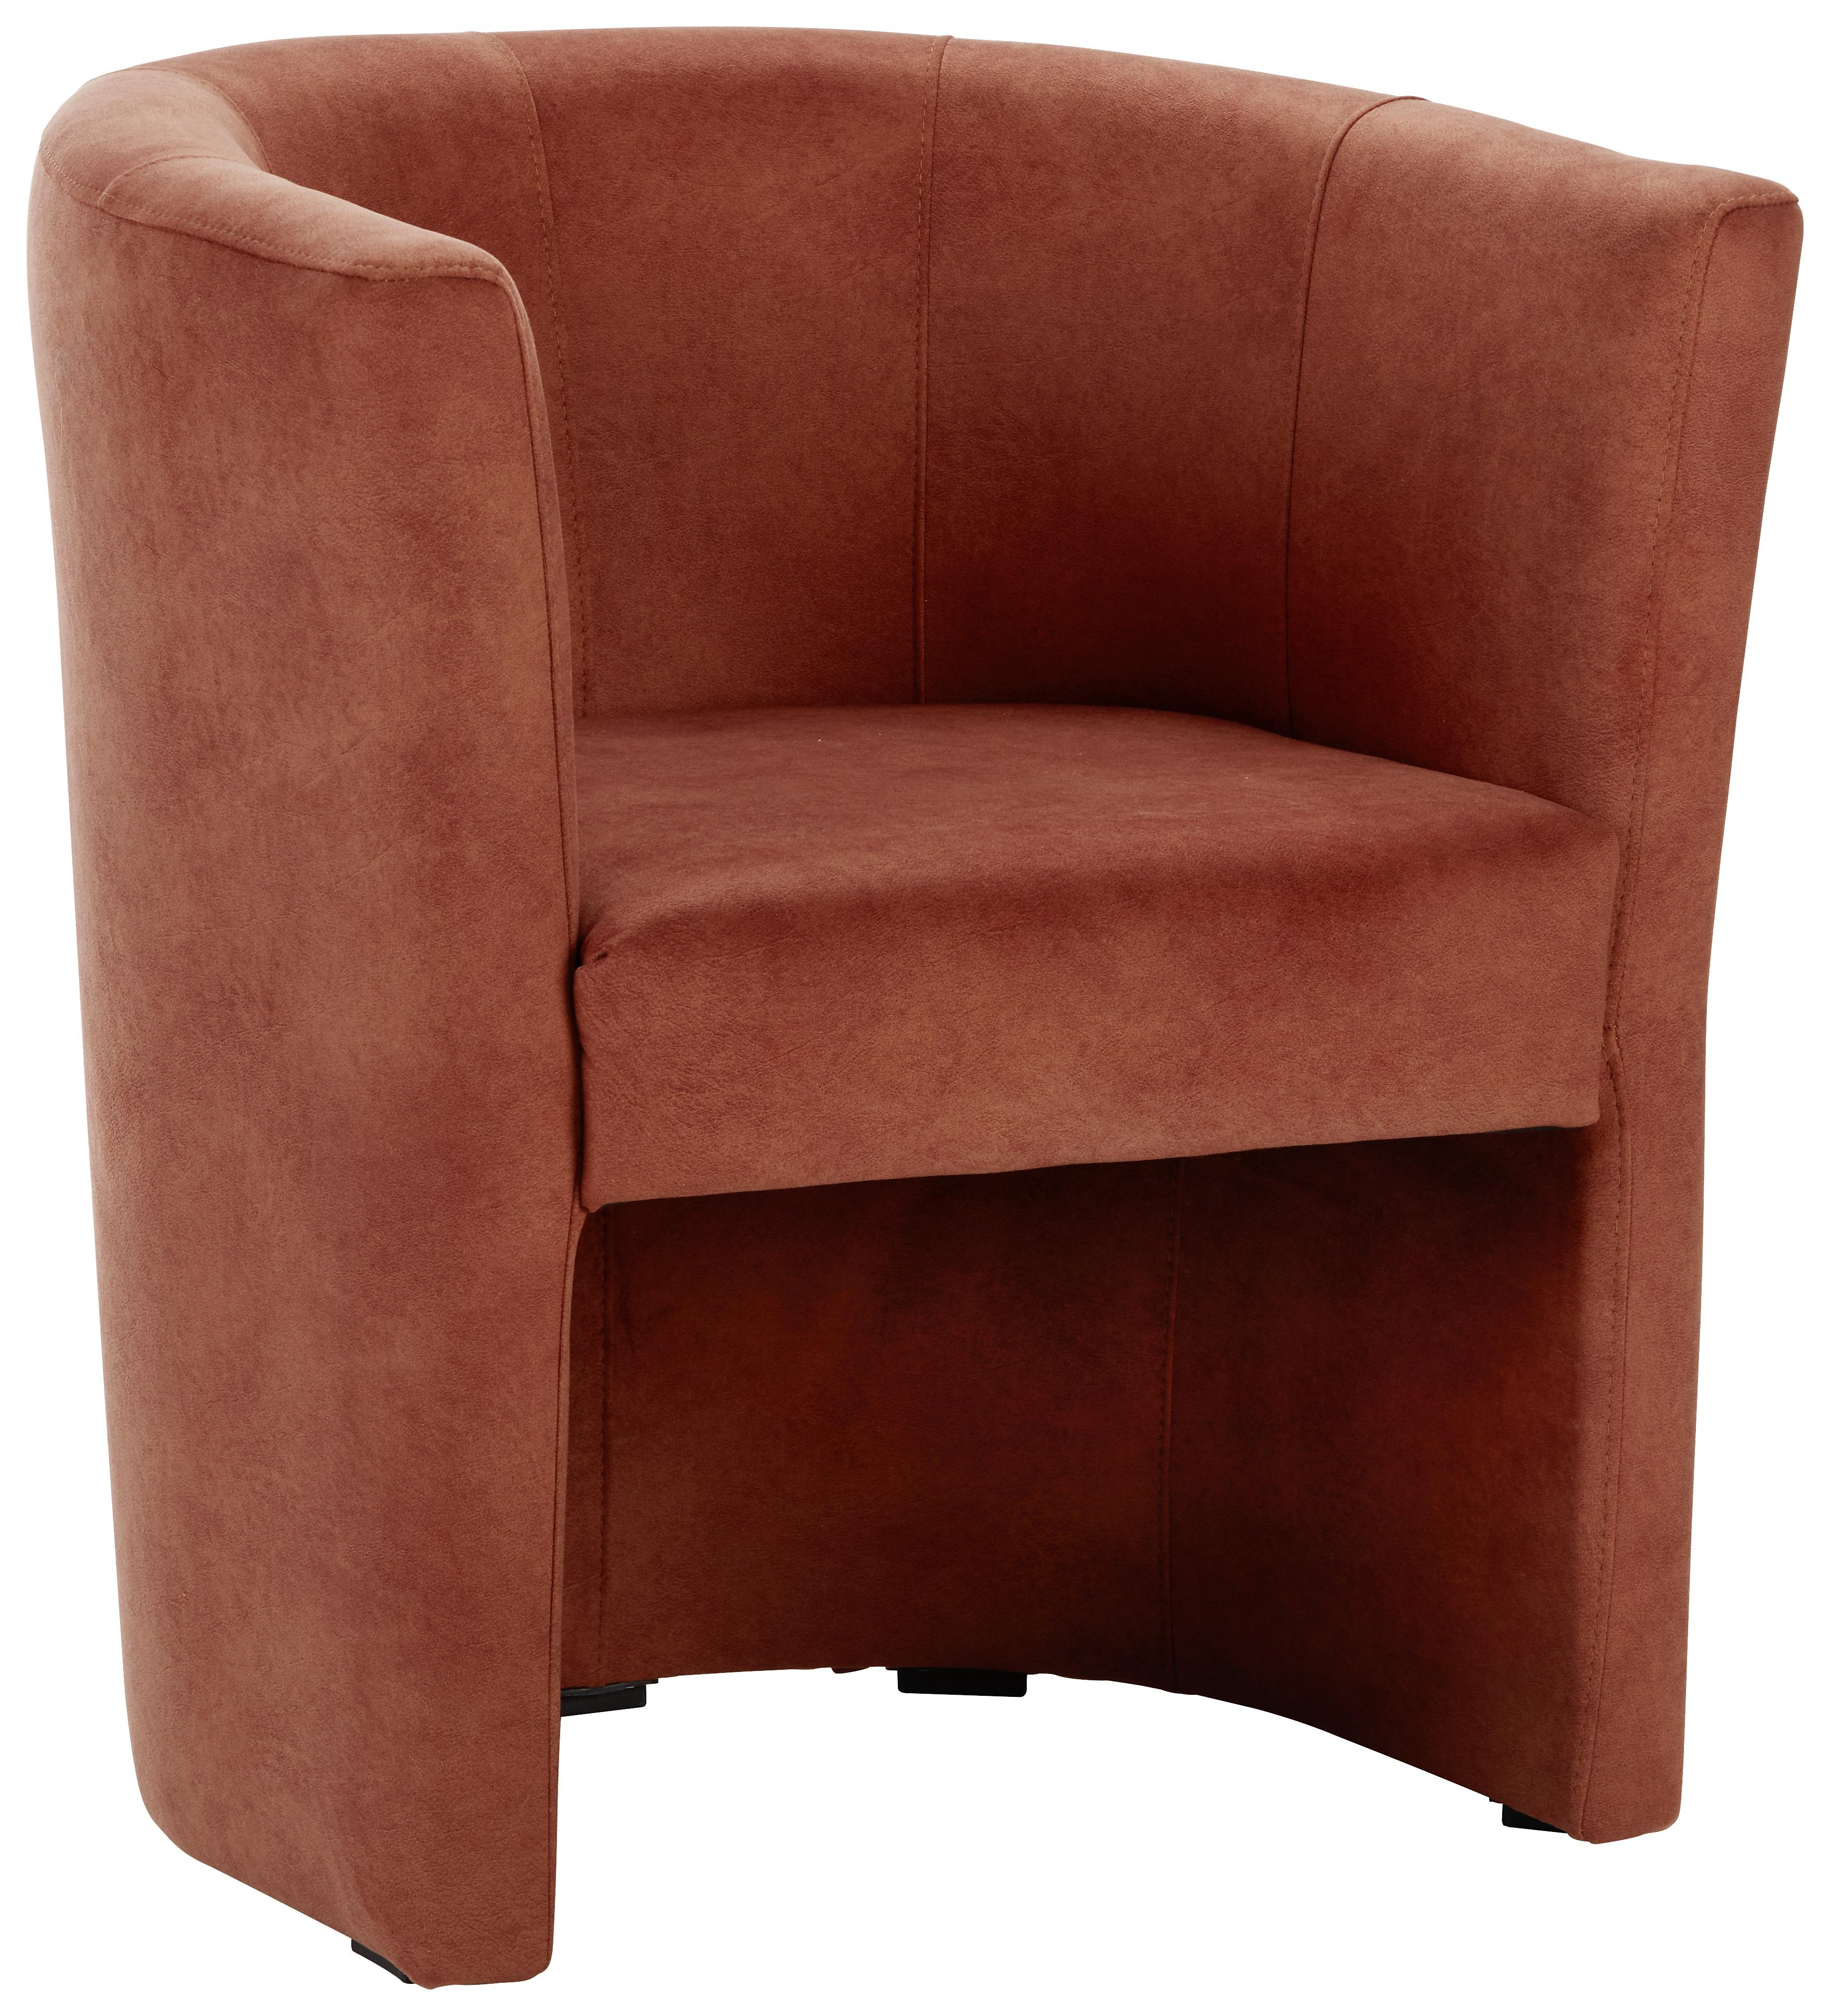 Fotelja Romy - boje hrđe/crna, Lifestyle, tekstil/plastika (54/72/63cm) - Modern Living